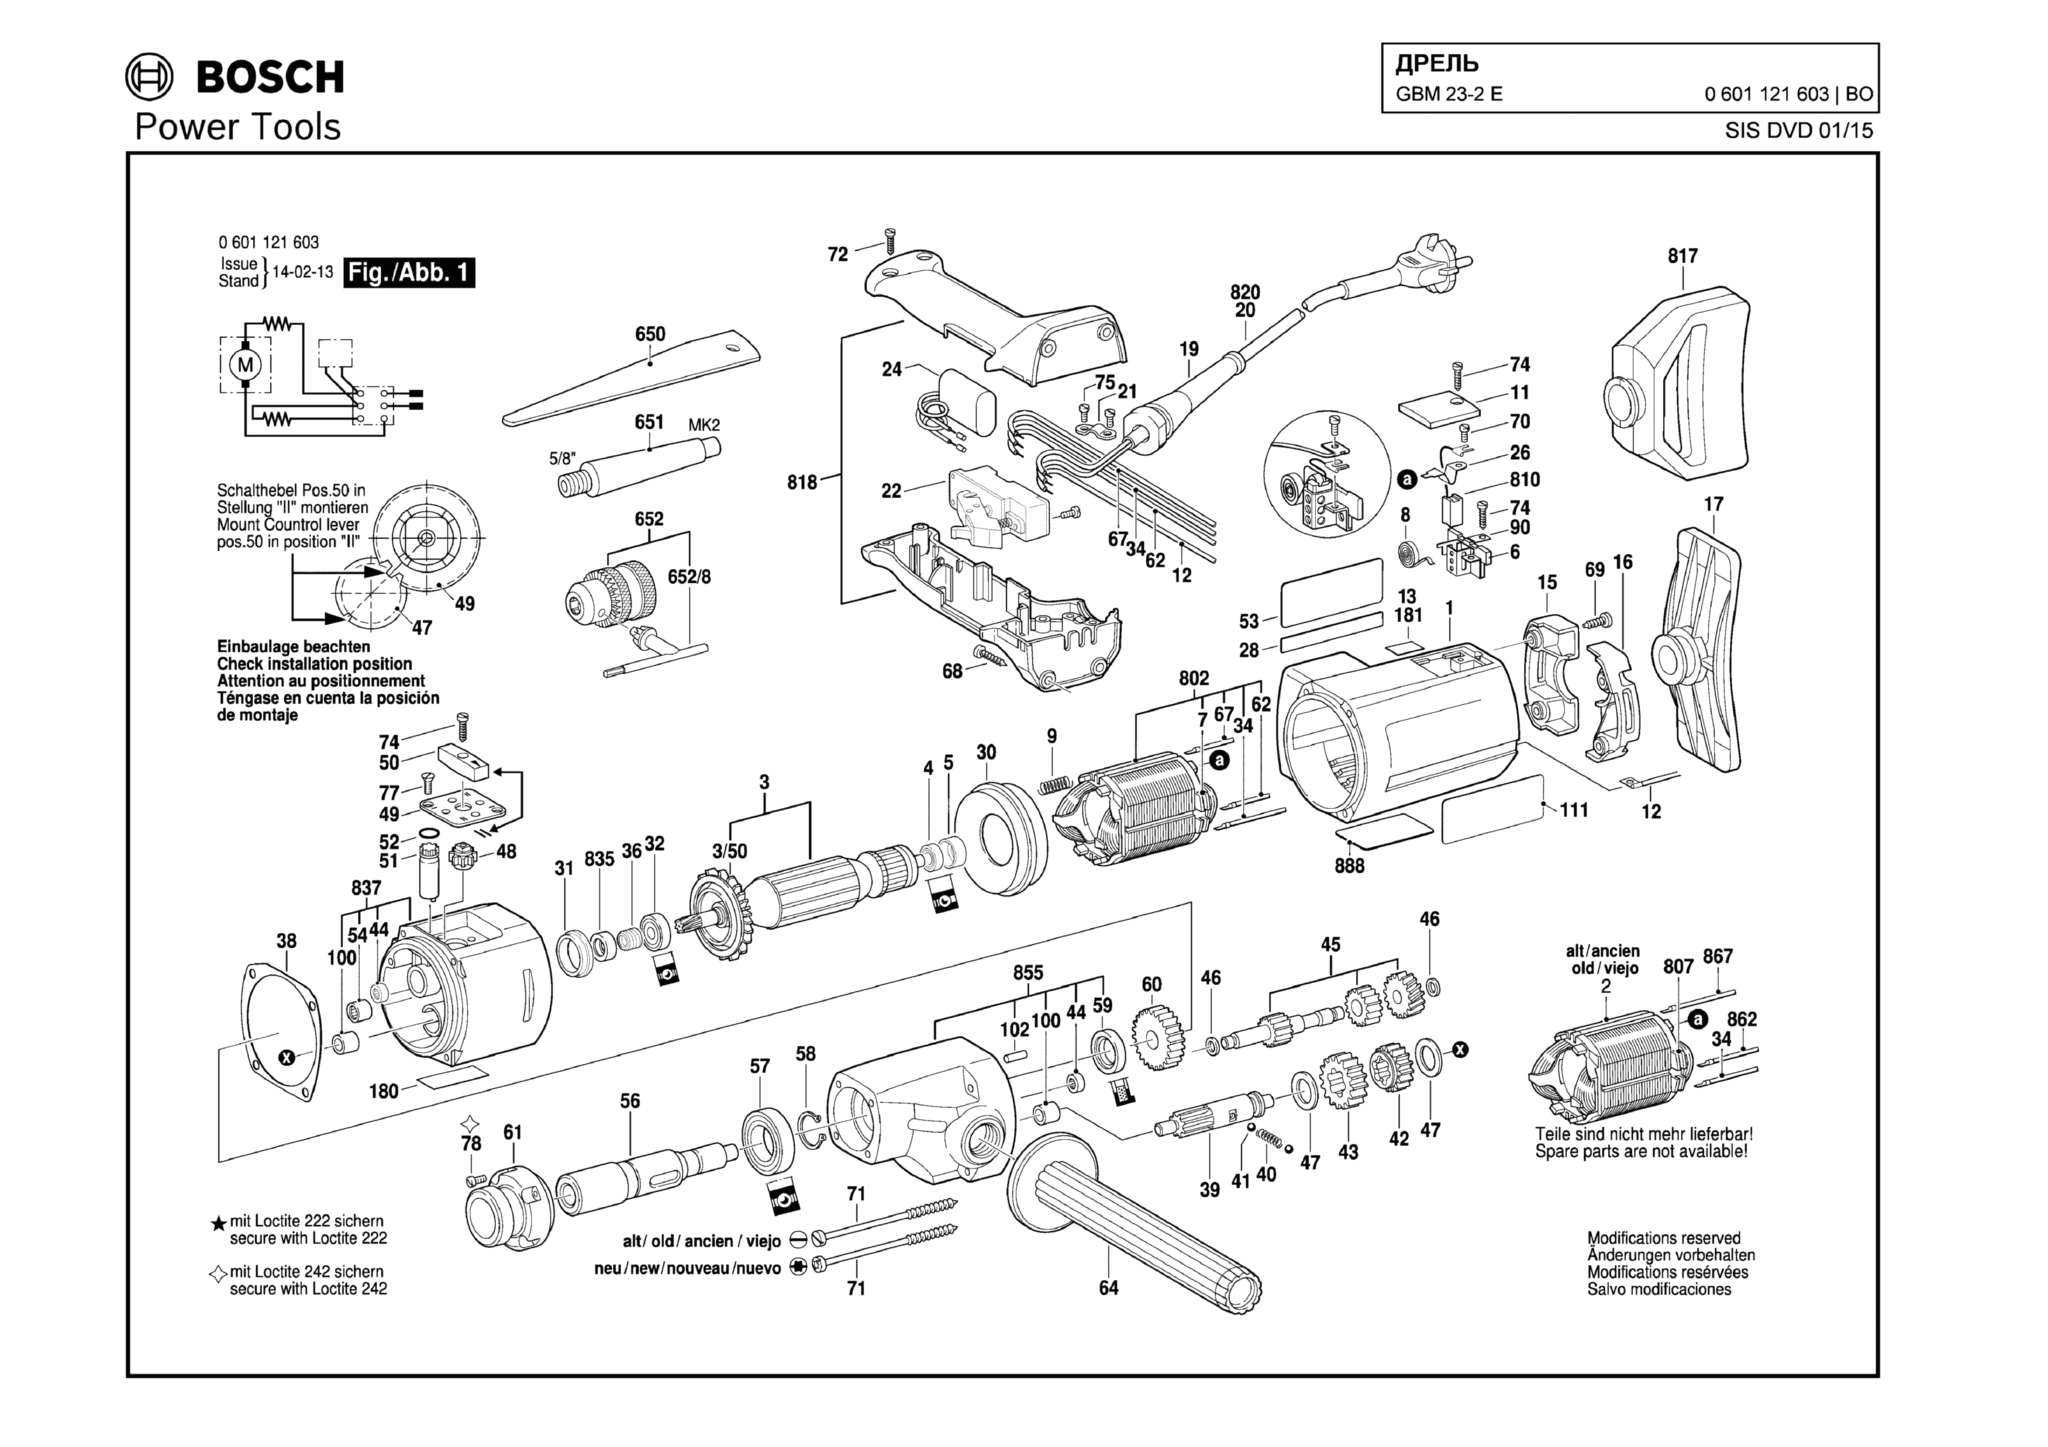 Запчасти, схема и деталировка Bosch GBM 23-2 E (ТИП 0601121603)